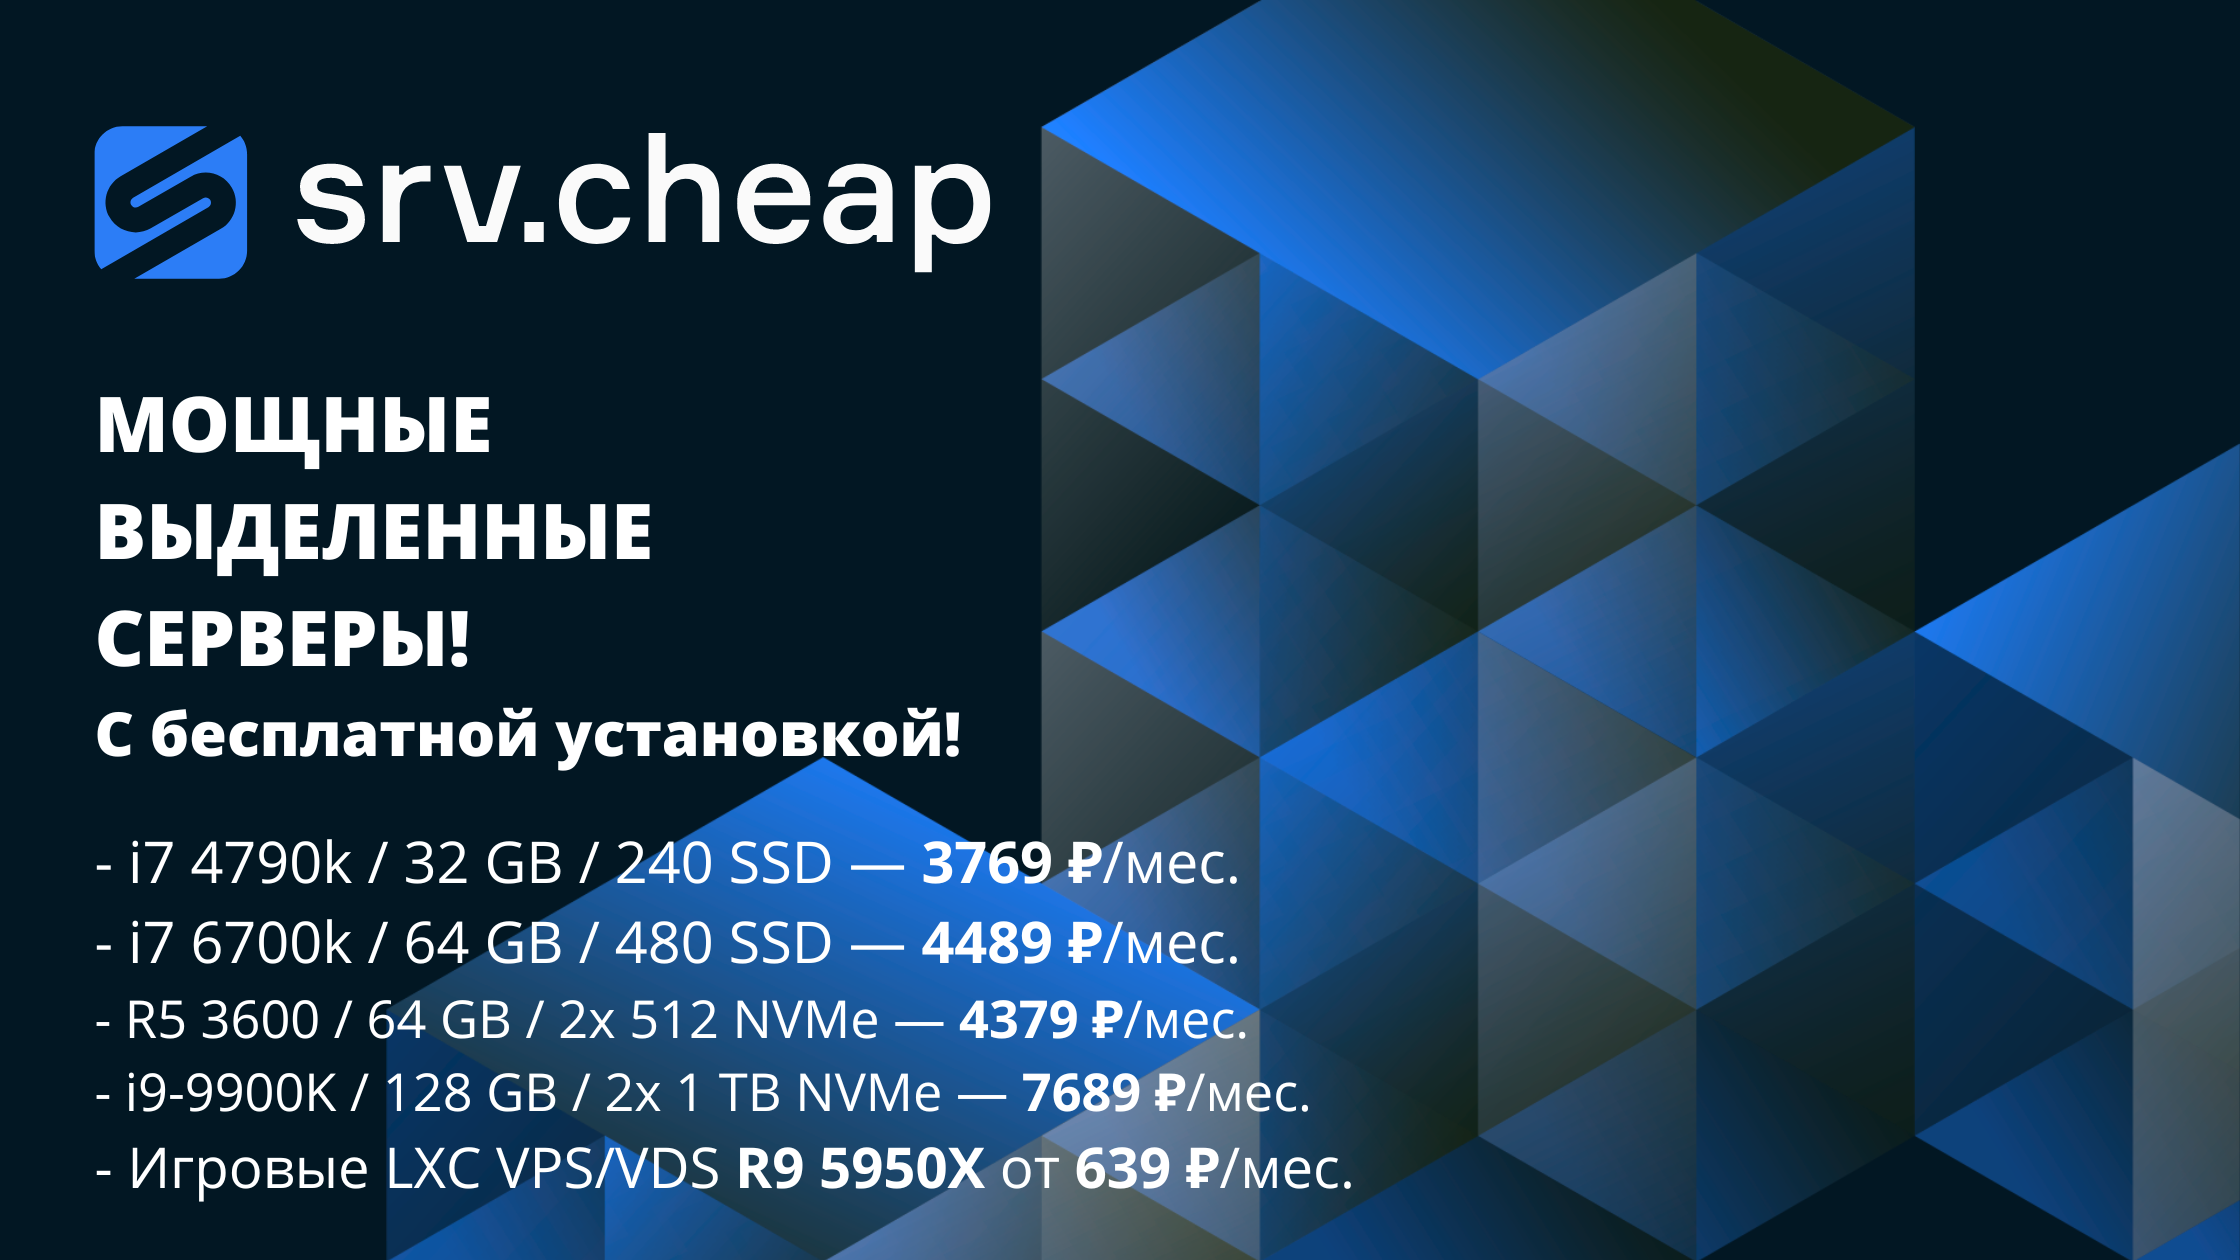 srv.cheap выделенные серверы хостинг мощный